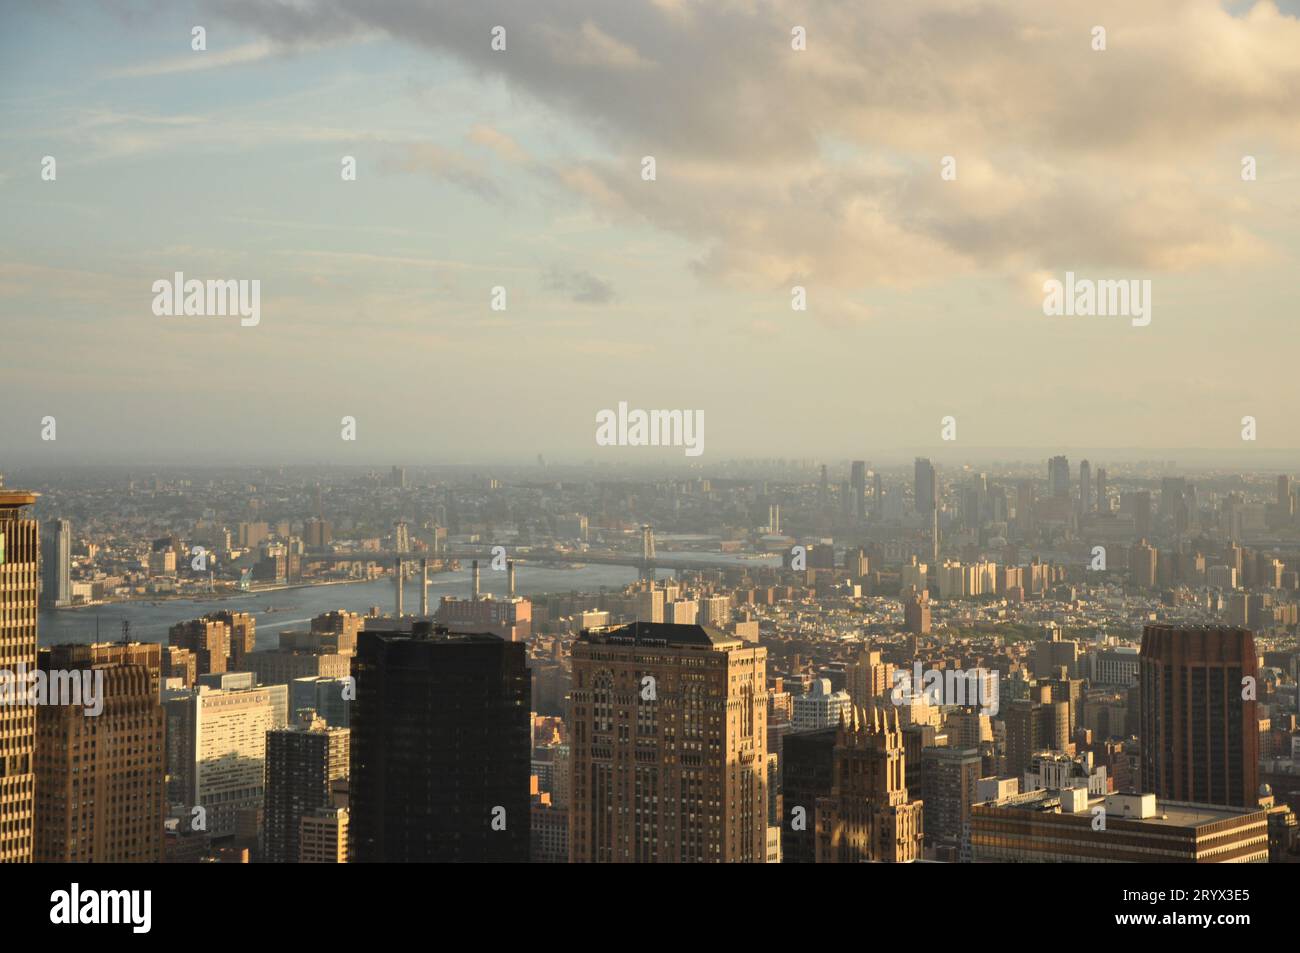 Vue aérienne de l'horizon de New York avec une architecture moderne s'élevant vers le ciel Banque D'Images